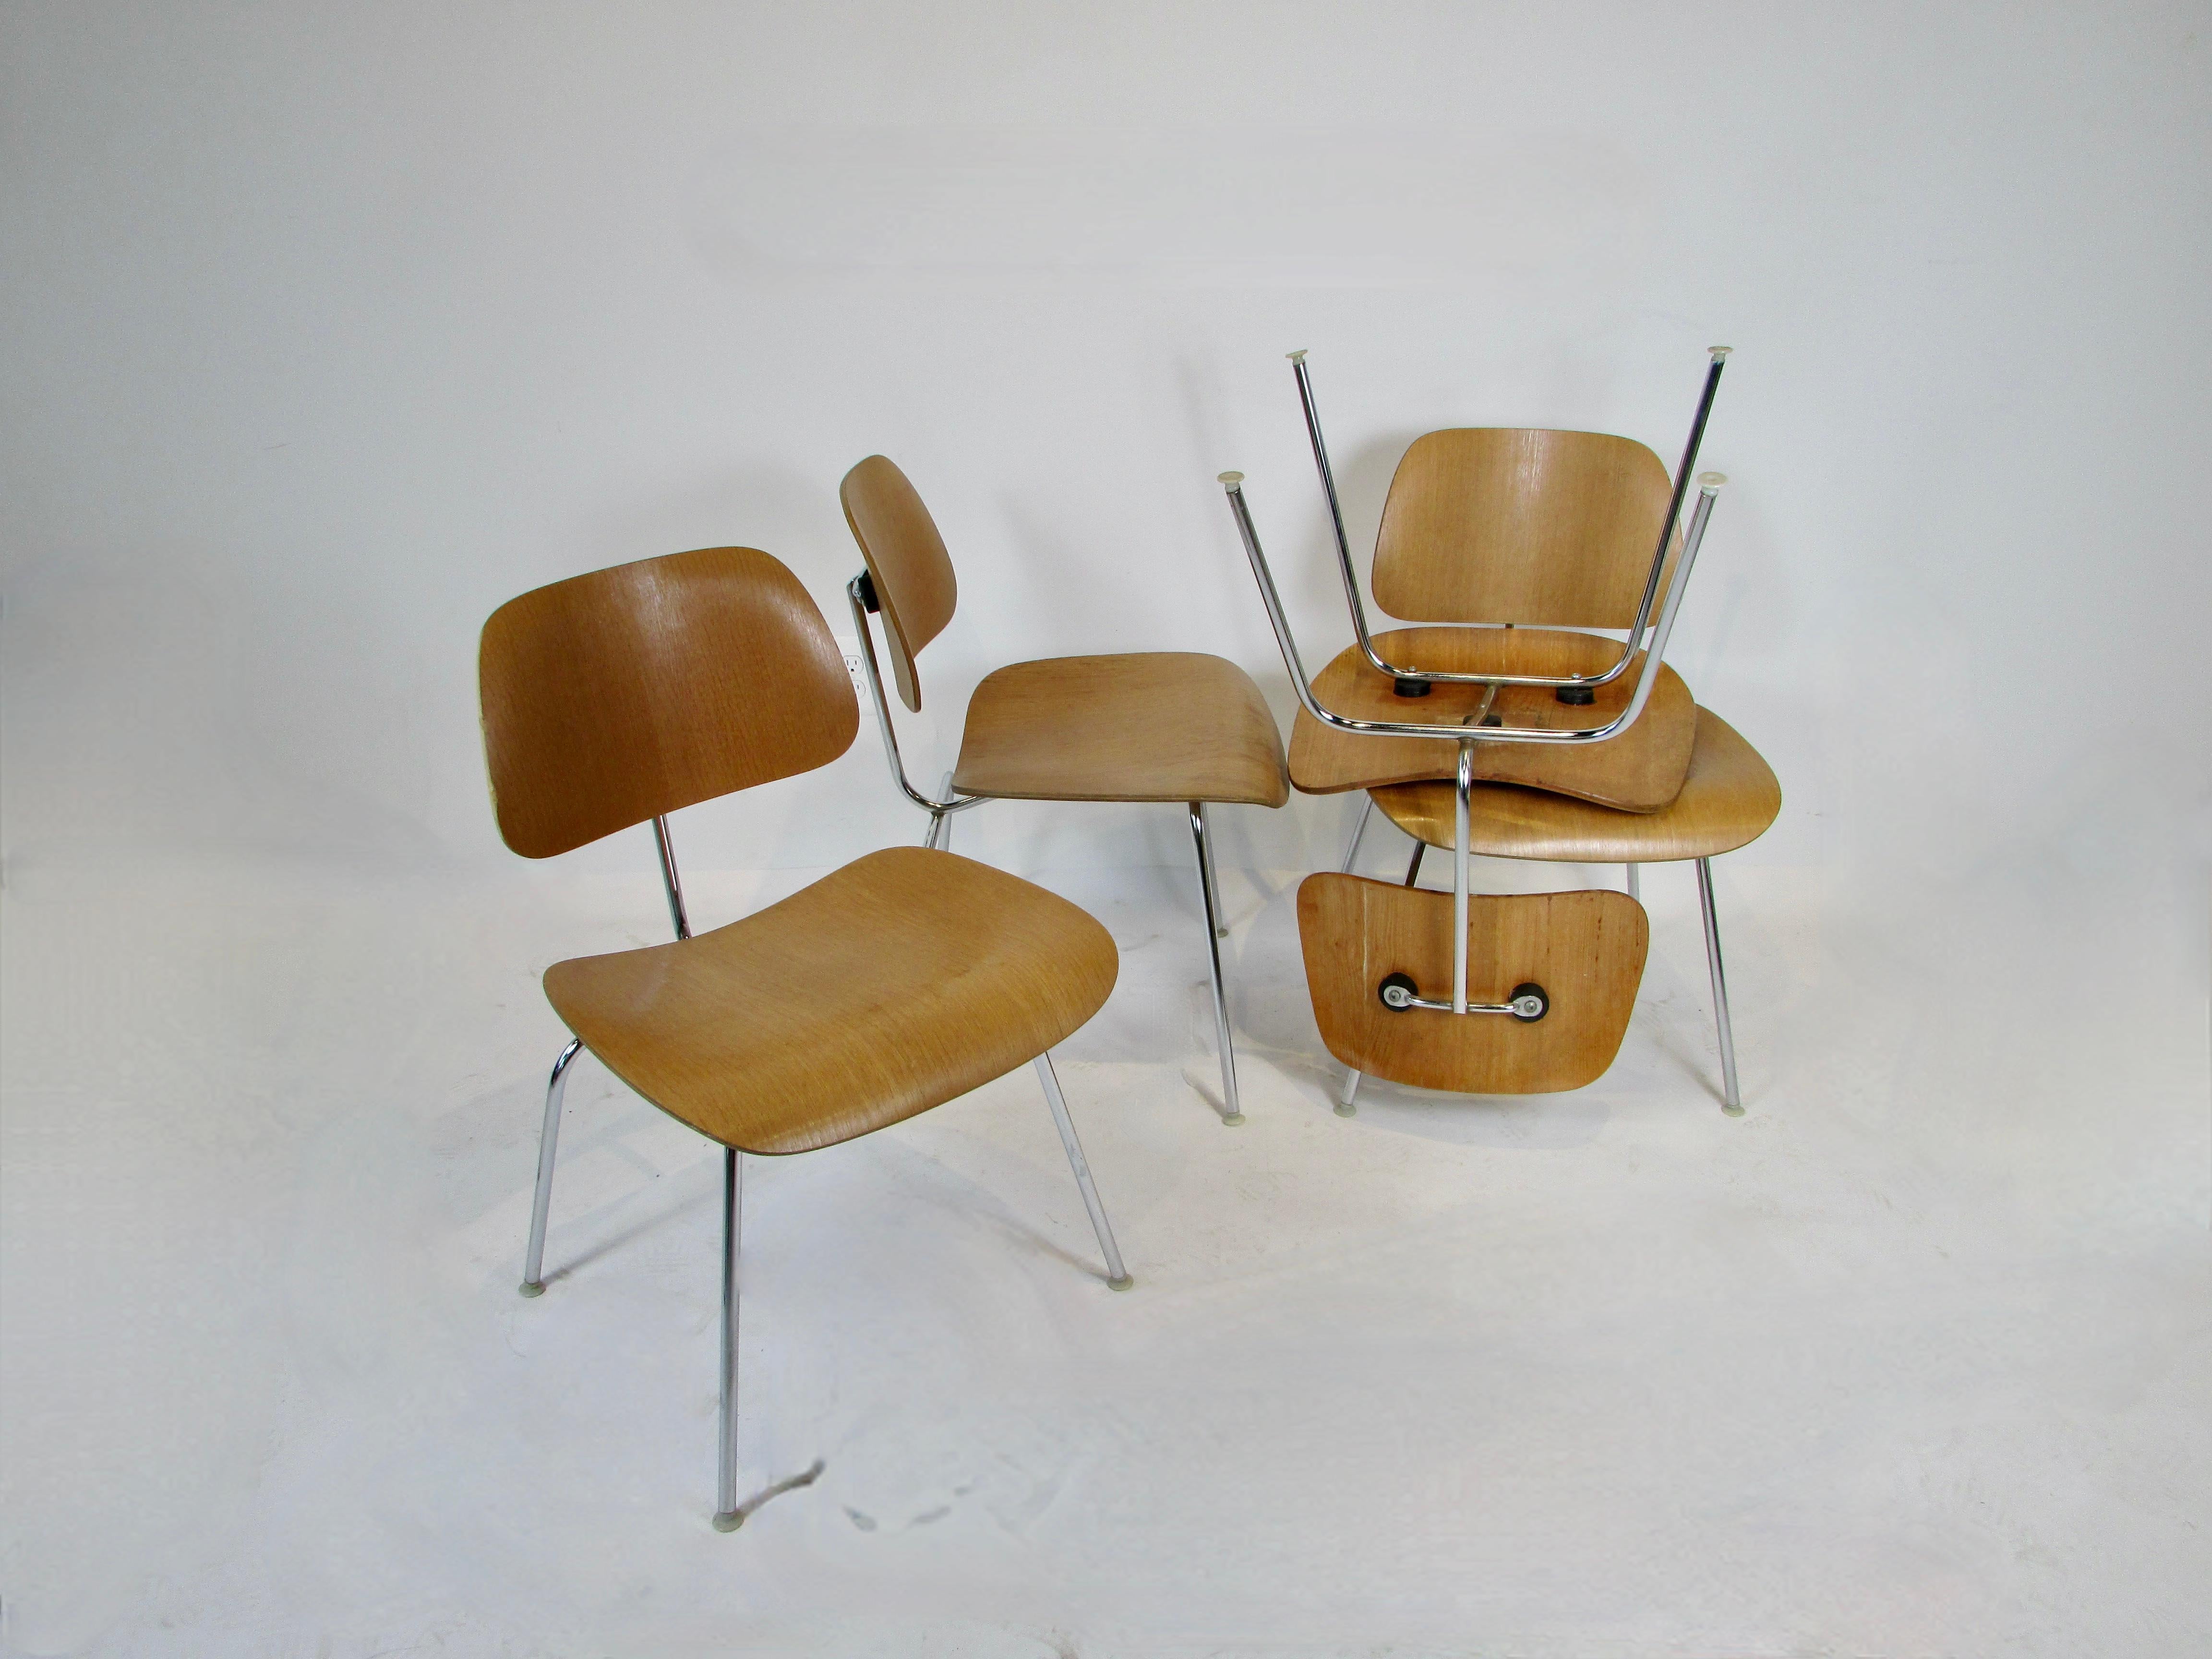 Ensemble de quatre chaises Eames pour Herman Miller DCM . Bois stratifié grain de frêne Calico sur cadres en acier chromé . Le bois est dans sa finition d'origine qui montre une certaine usure, les cadres chromés sont en bon état. Tous les patins